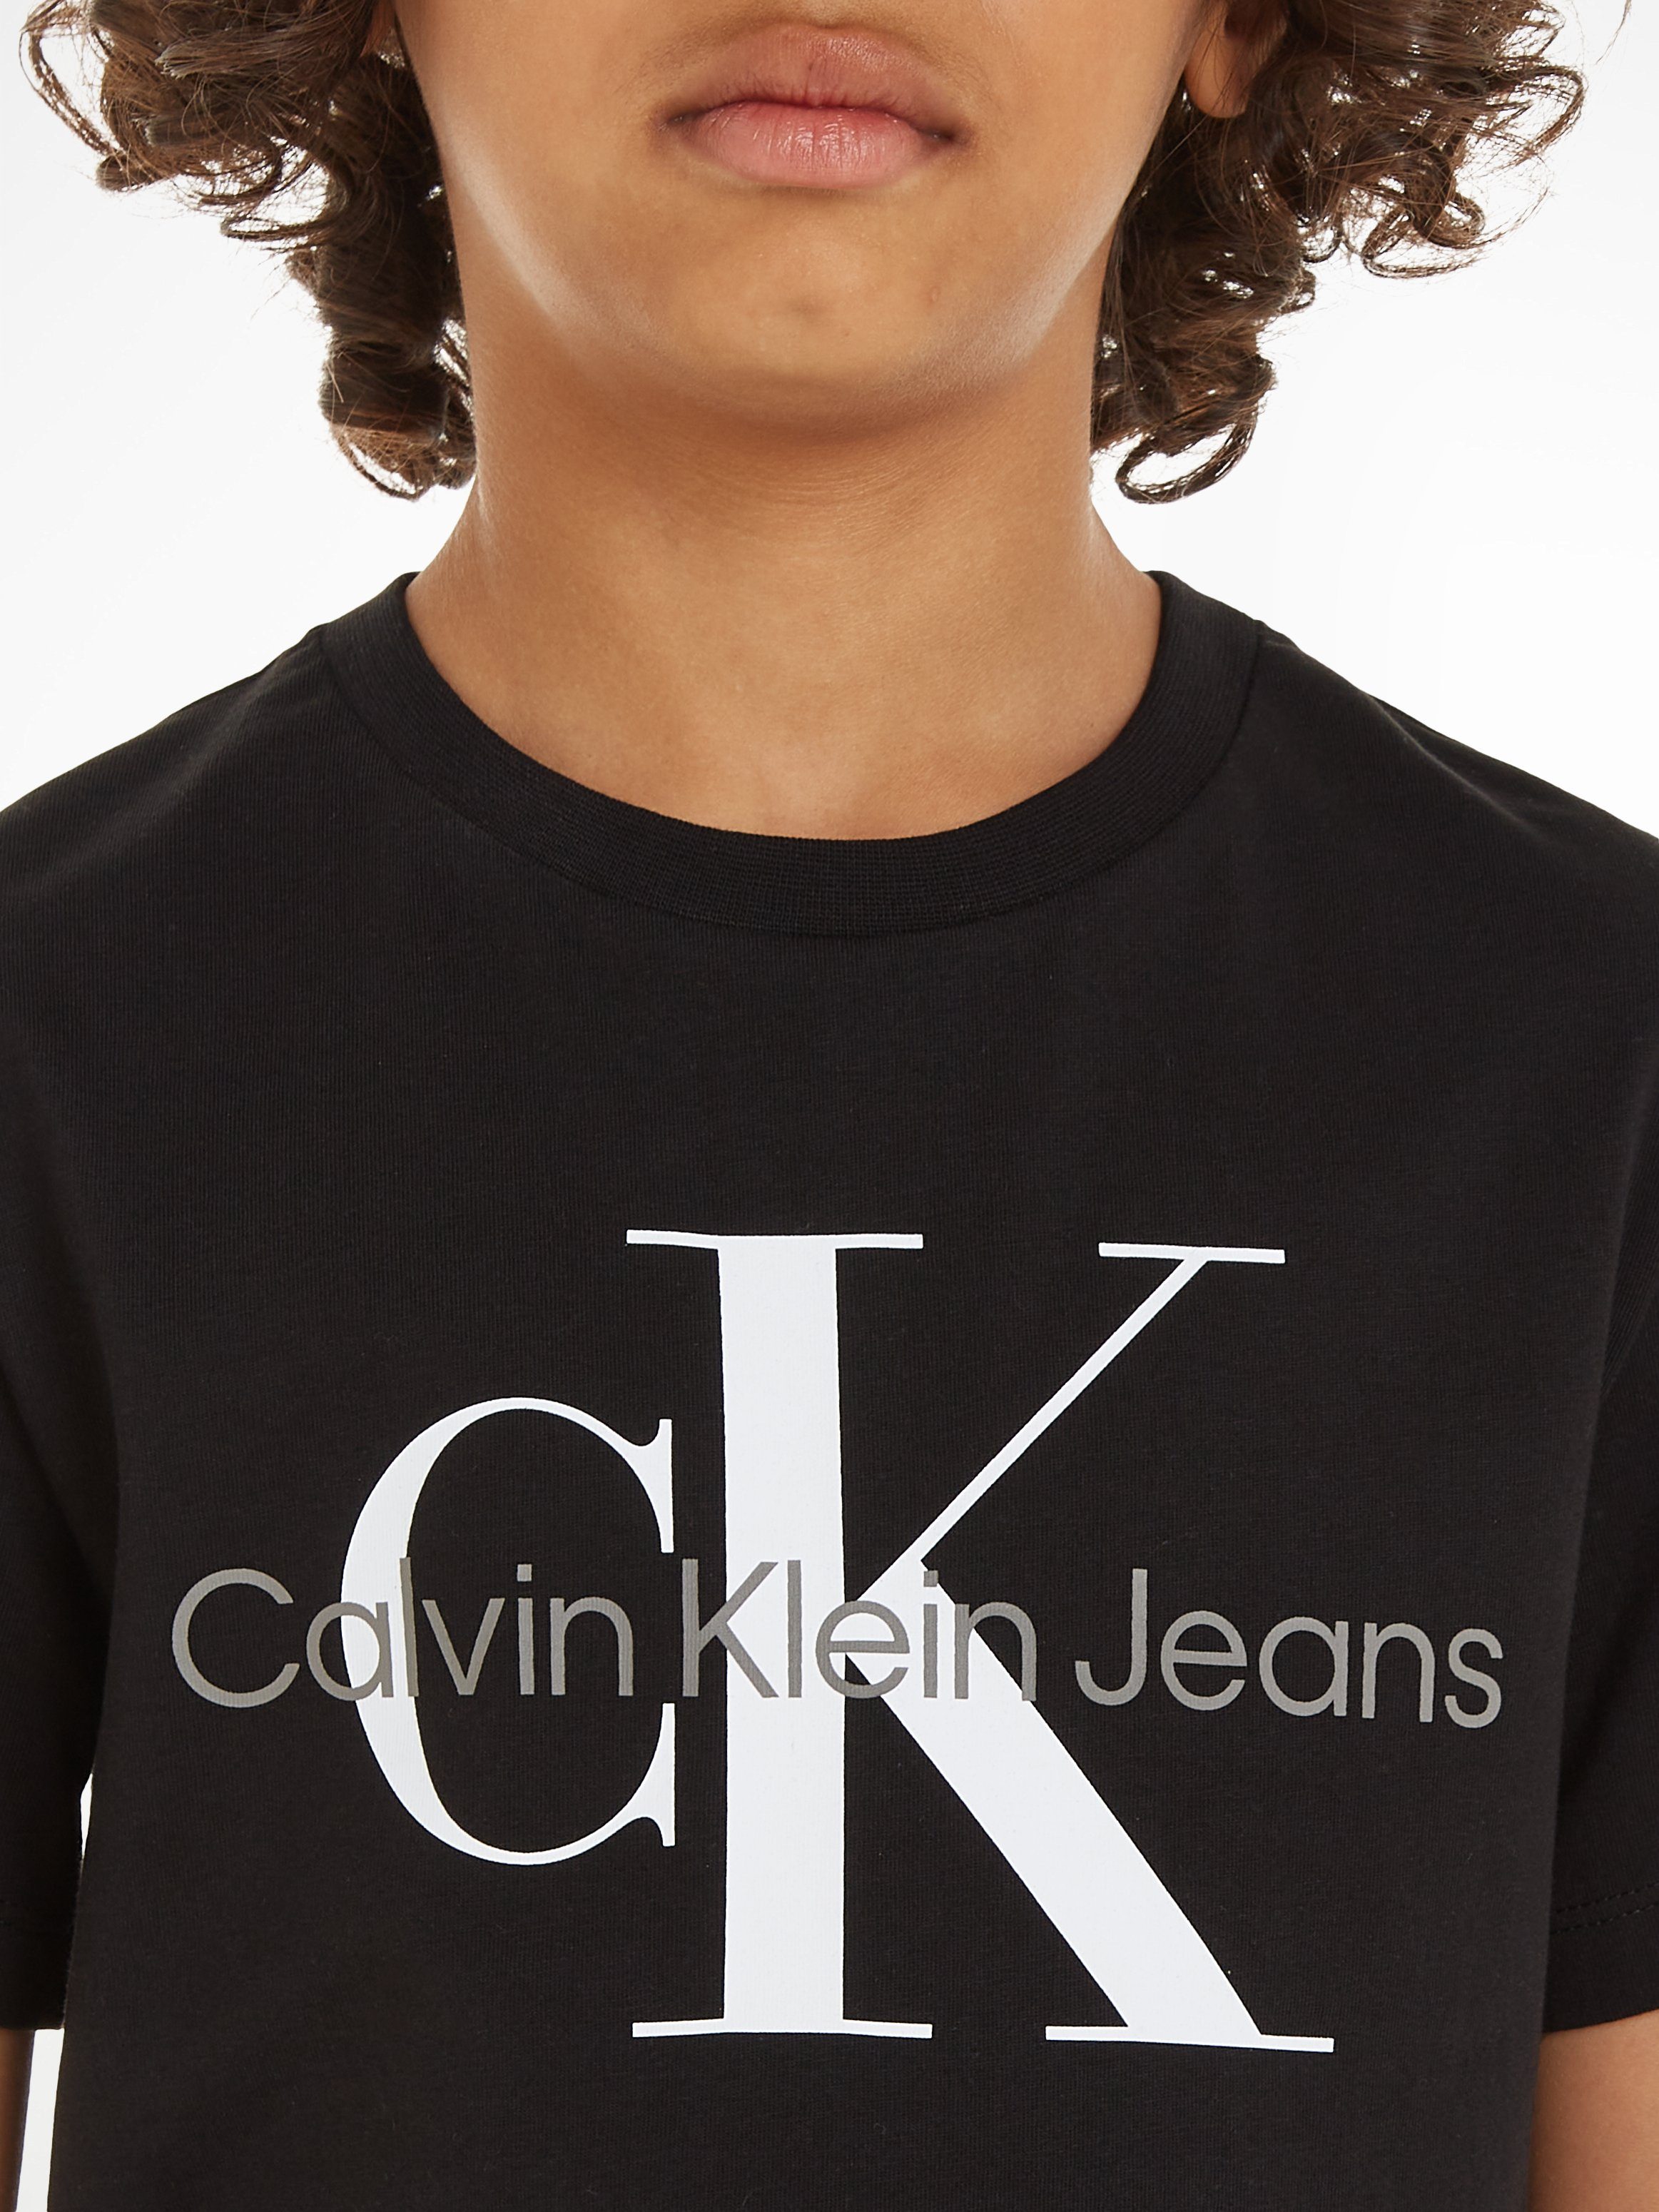 Calvin Klein Jeans CK T-SHIRT Black Ck SS T-Shirt MONOGRAM